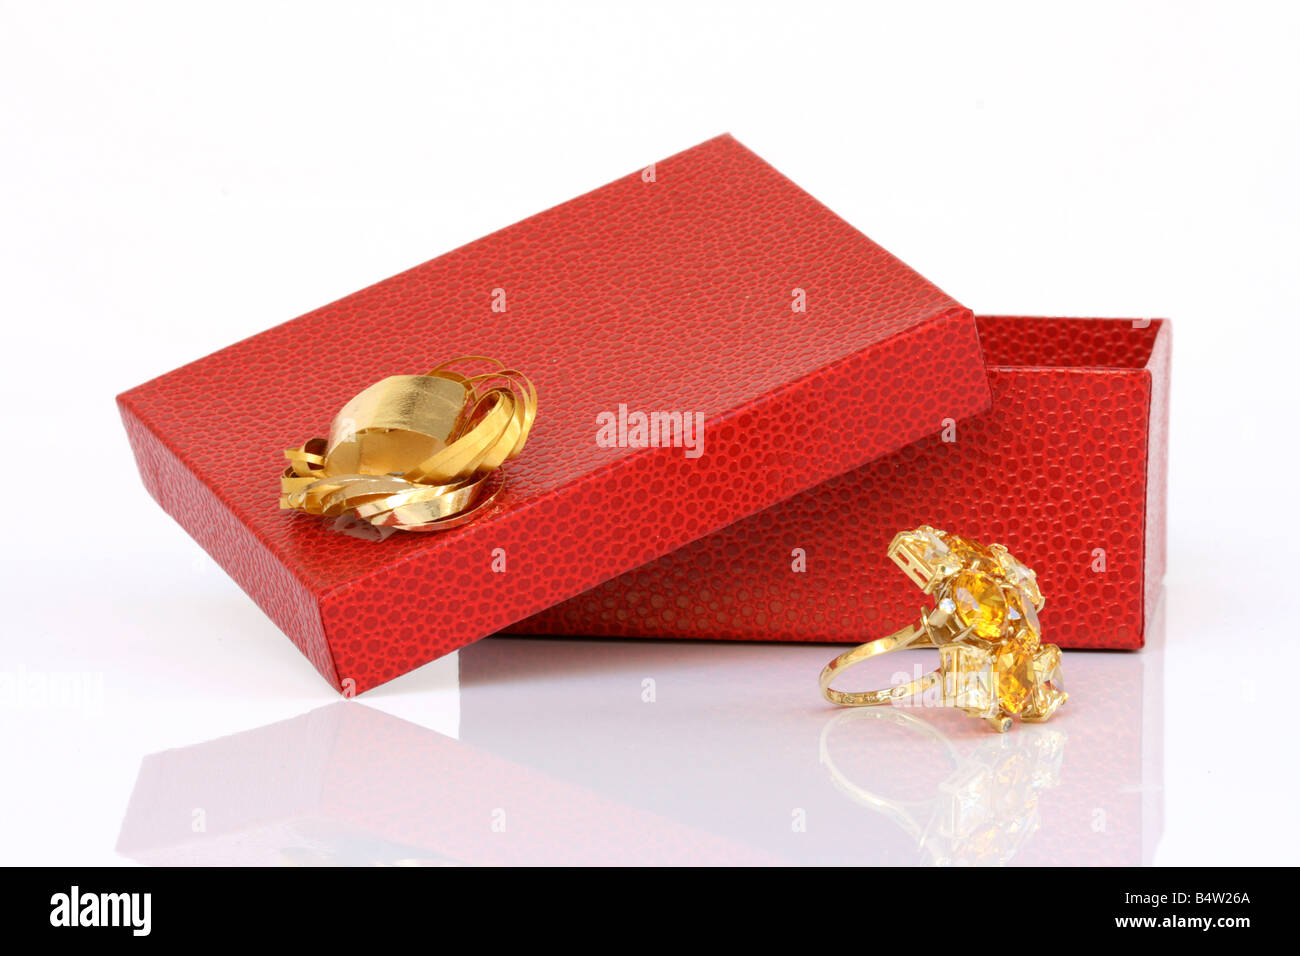 Aprire confezione regalo rossa e anello in oro con la celebrazione di riflessione dei concetti Foto Stock